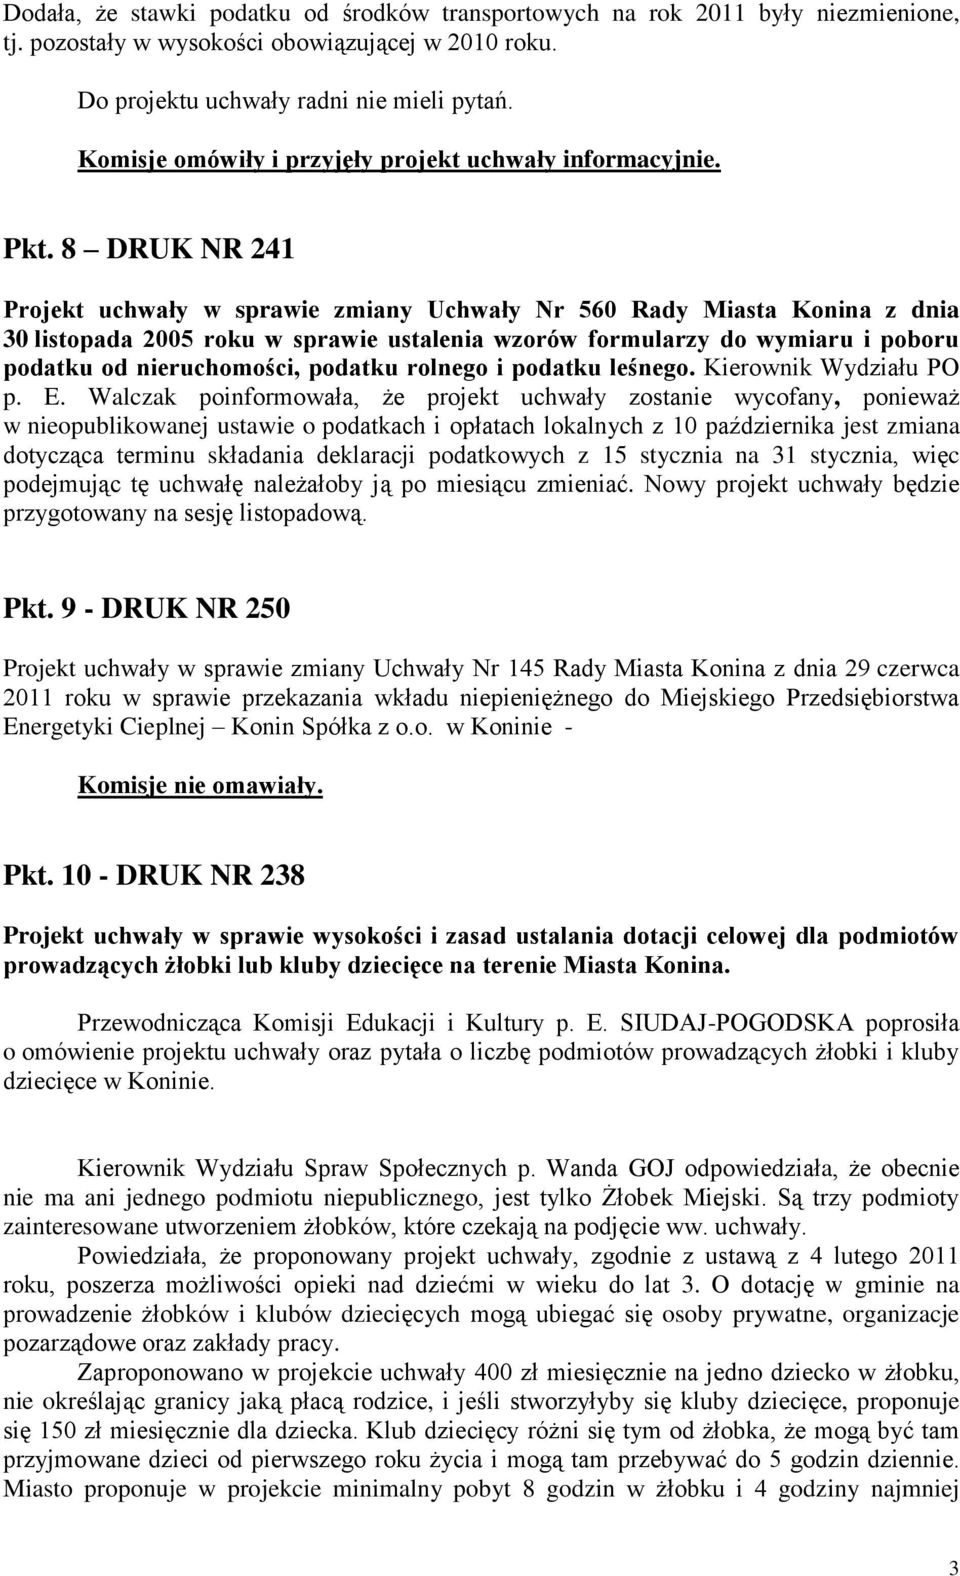 8 DRUK NR 241 Projekt uchwały w sprawie zmiany Uchwały Nr 560 Rady Miasta Konina z dnia 30 listopada 2005 roku w sprawie ustalenia wzorów formularzy do wymiaru i poboru podatku od nieruchomości,